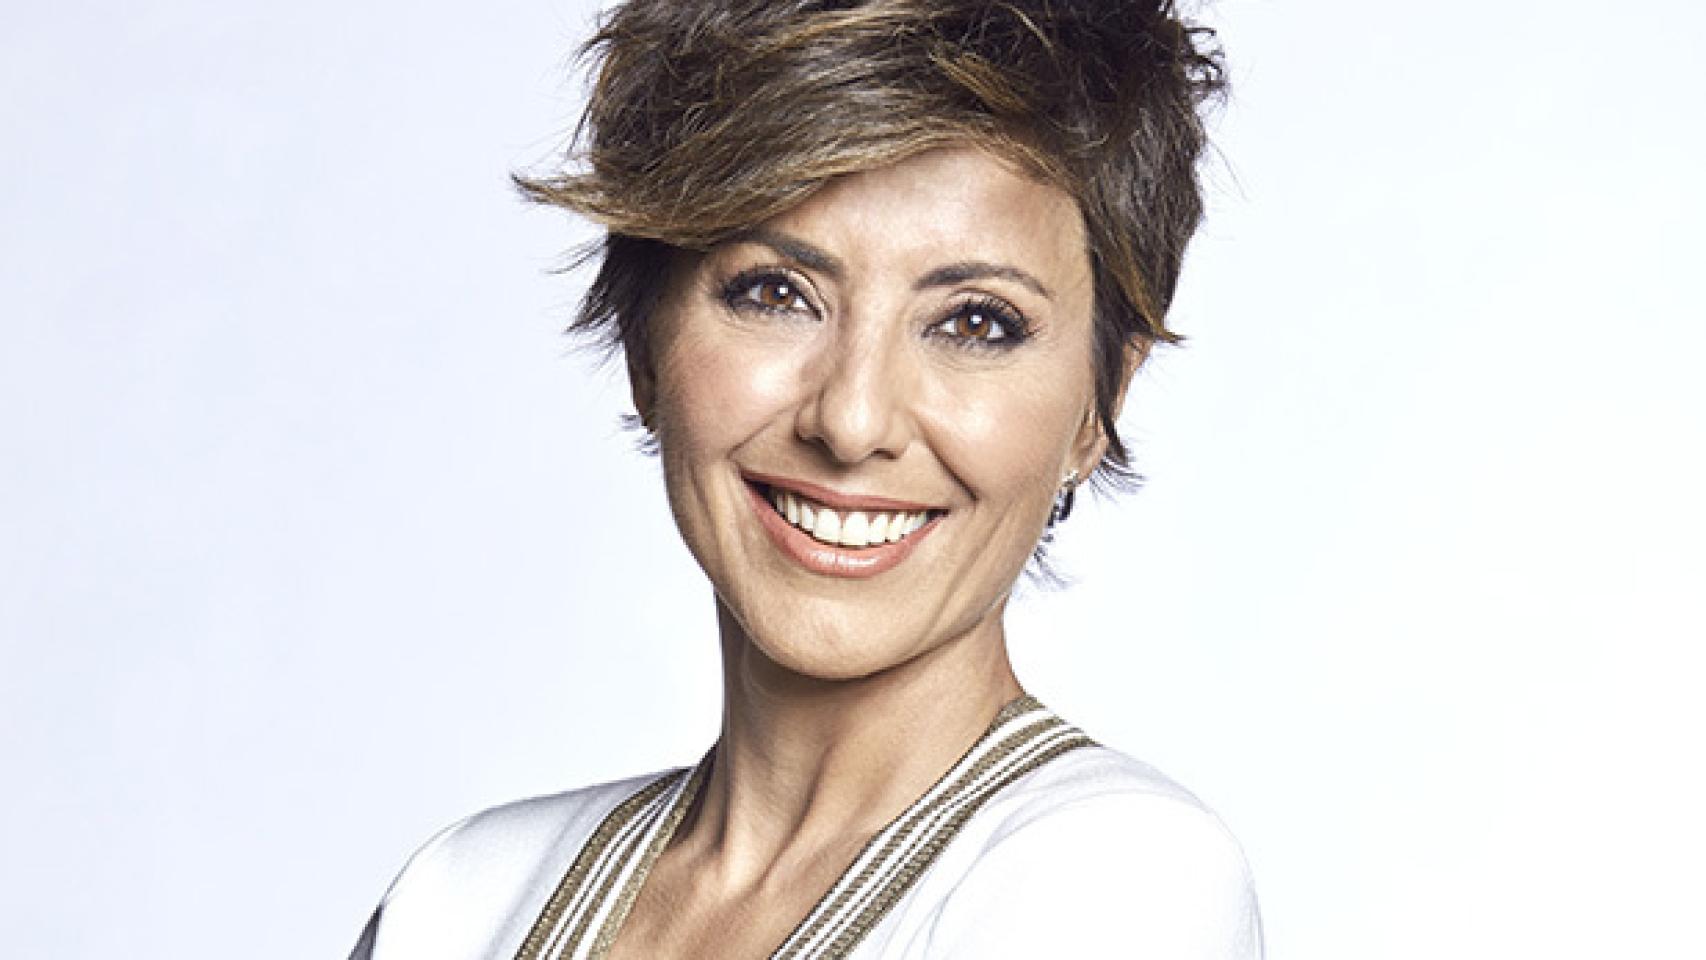 Sonsoles Ónega, en una imagen oficial de Mediaset.